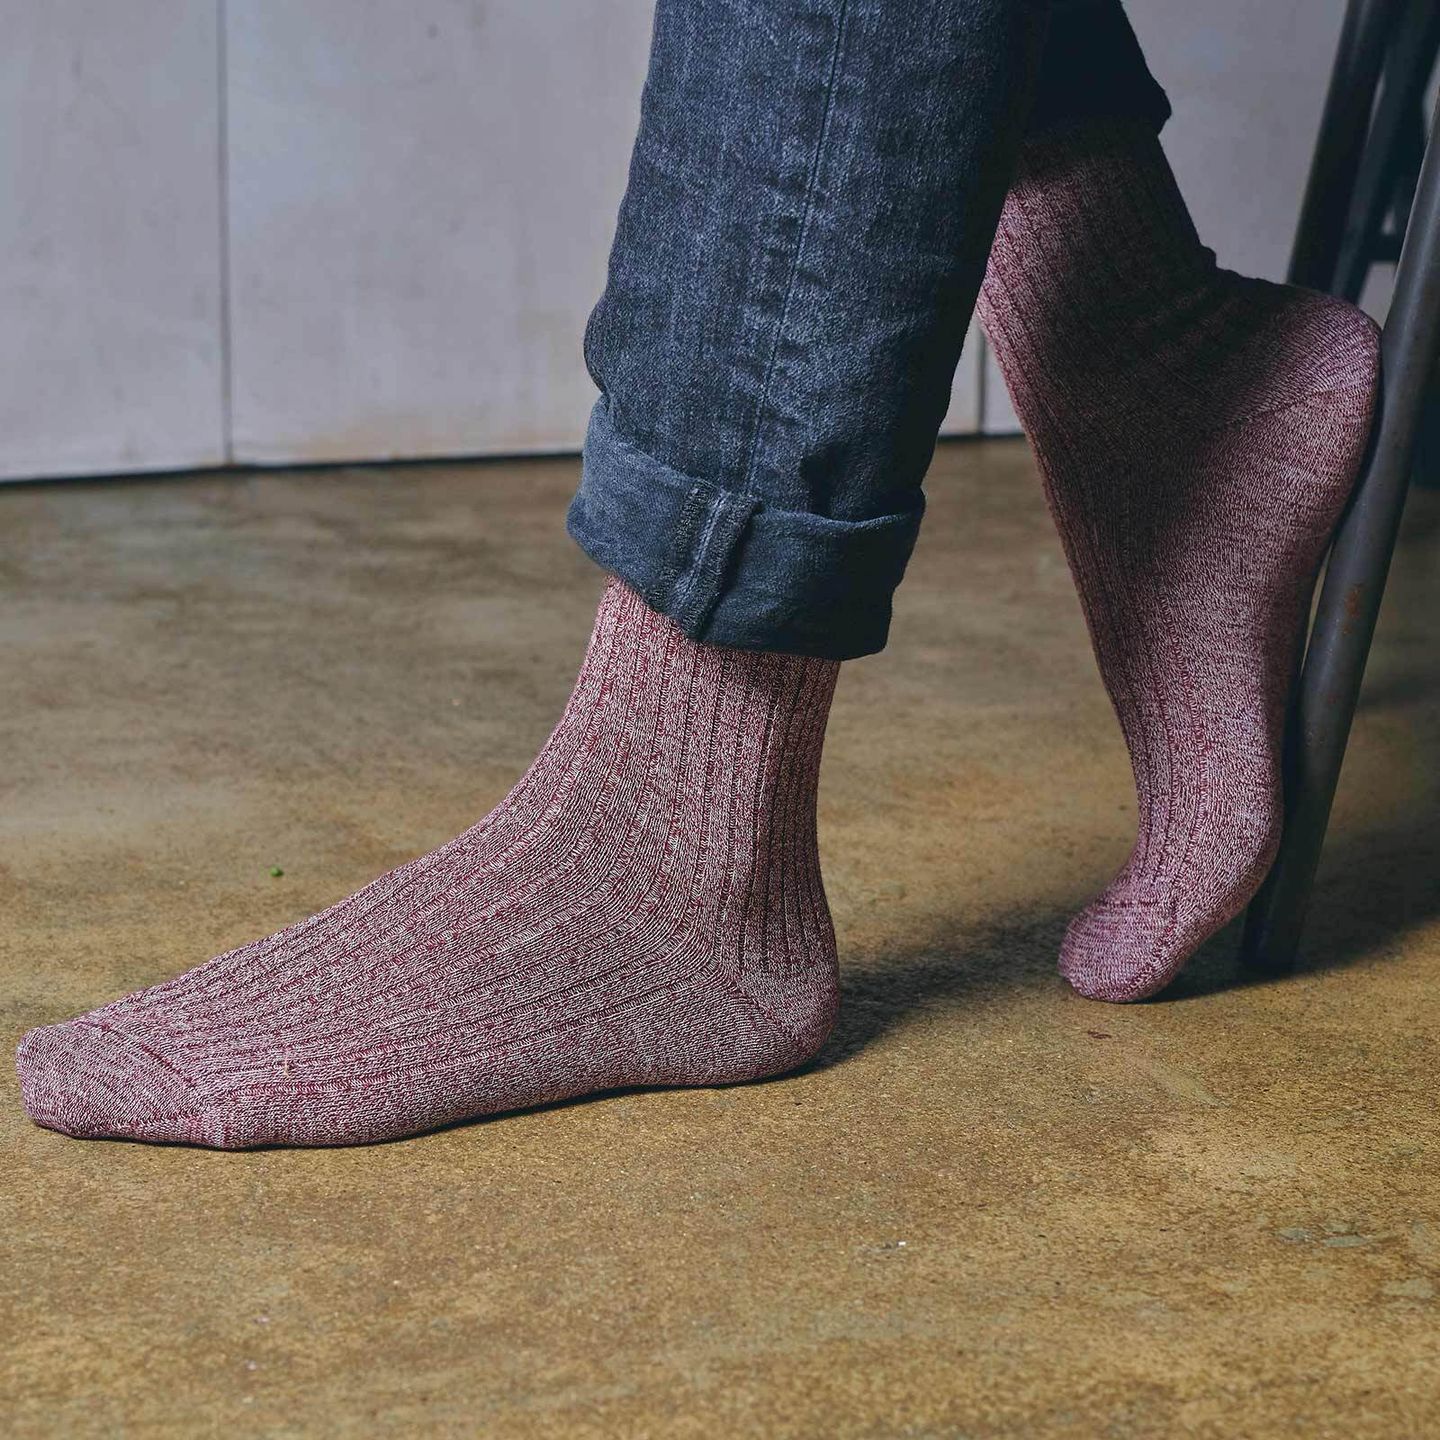 Man wearing marl socks in burgundy on a brown concrete floor